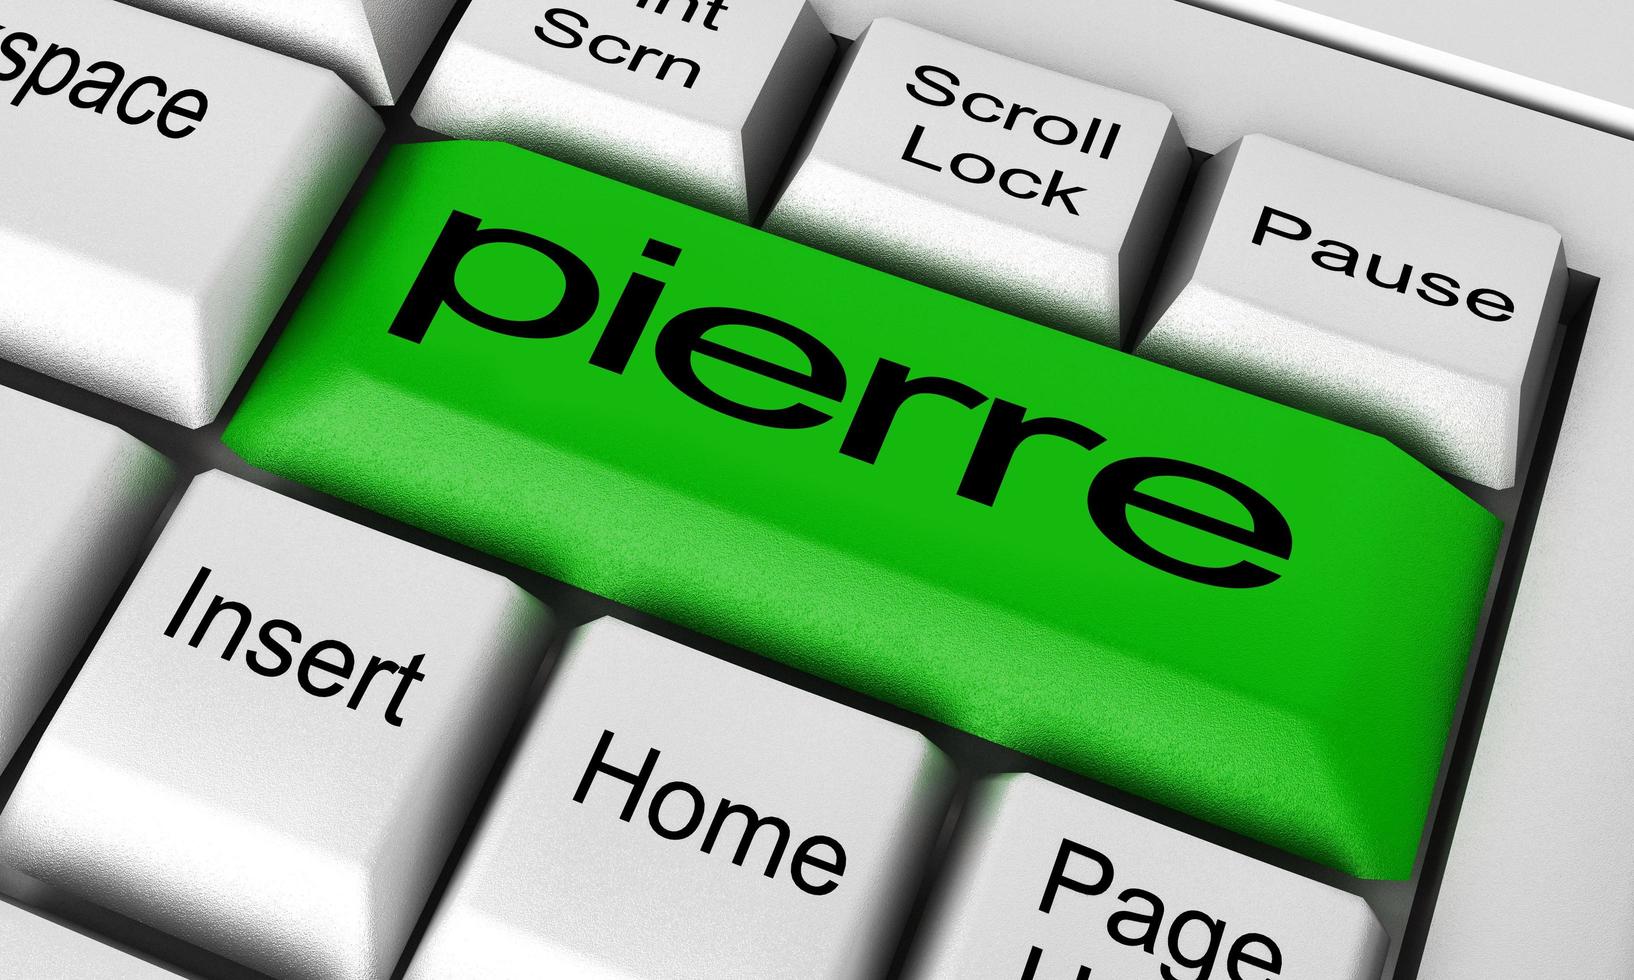 Pierre-Wort auf der Tastaturtaste foto